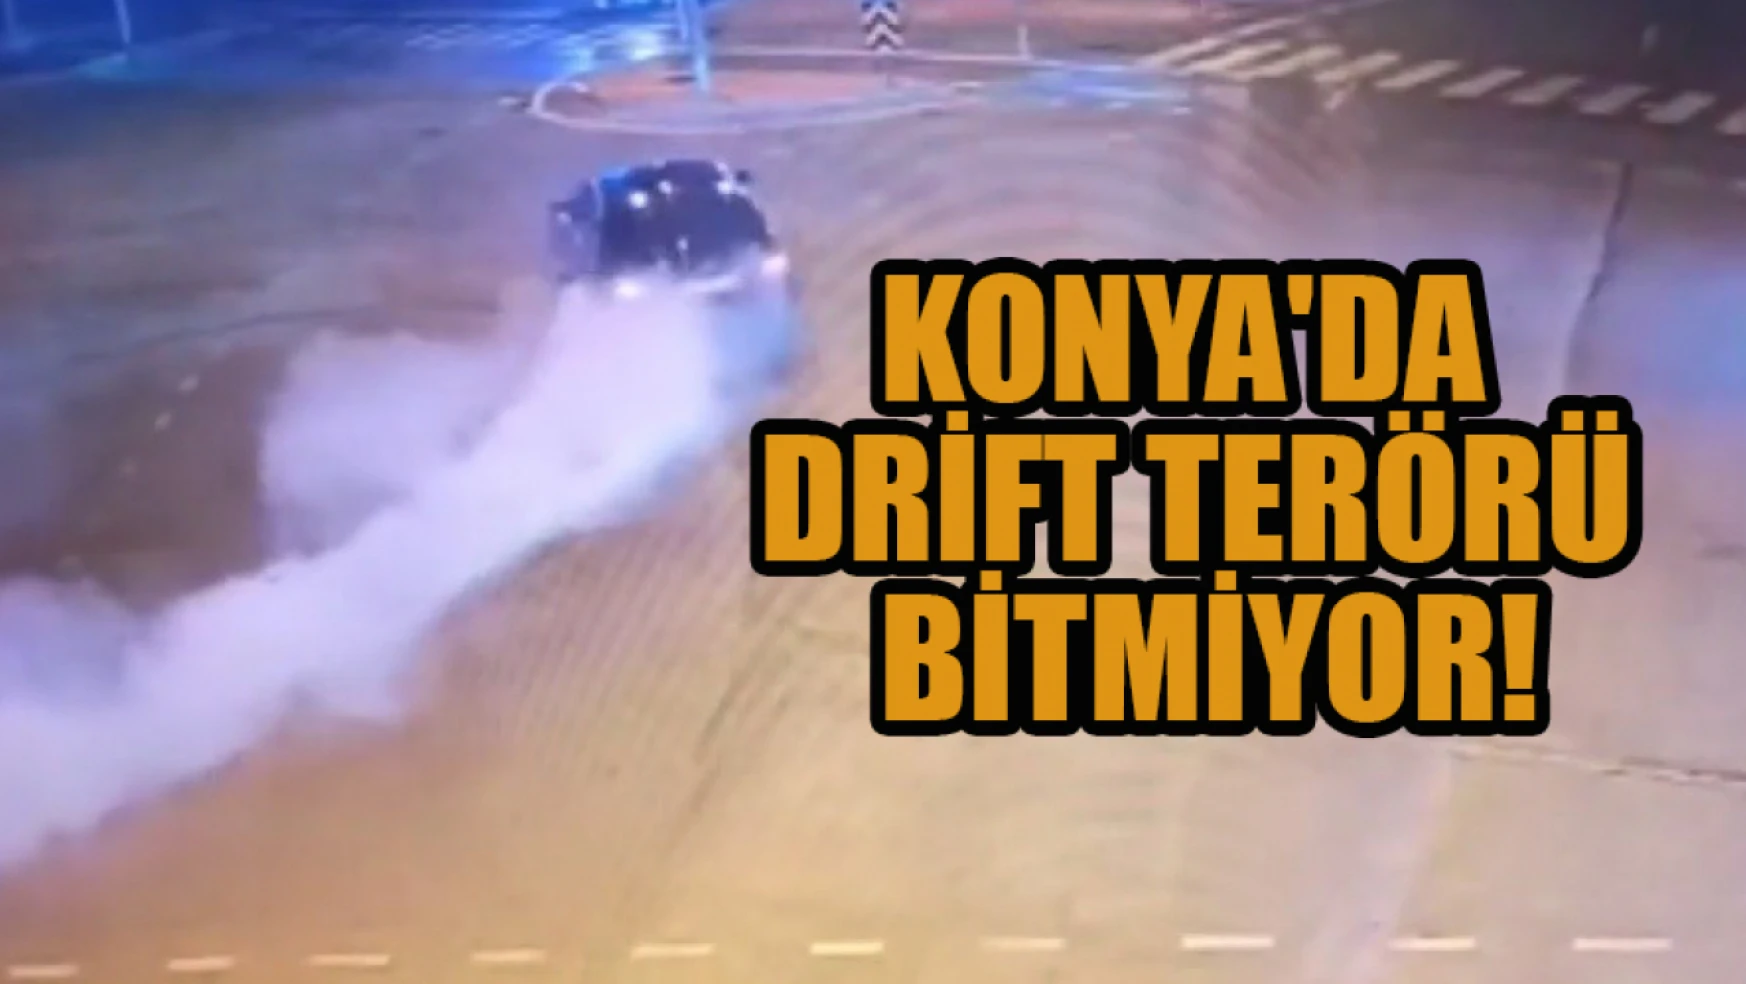 Konya'da drift terörü bitmiyor